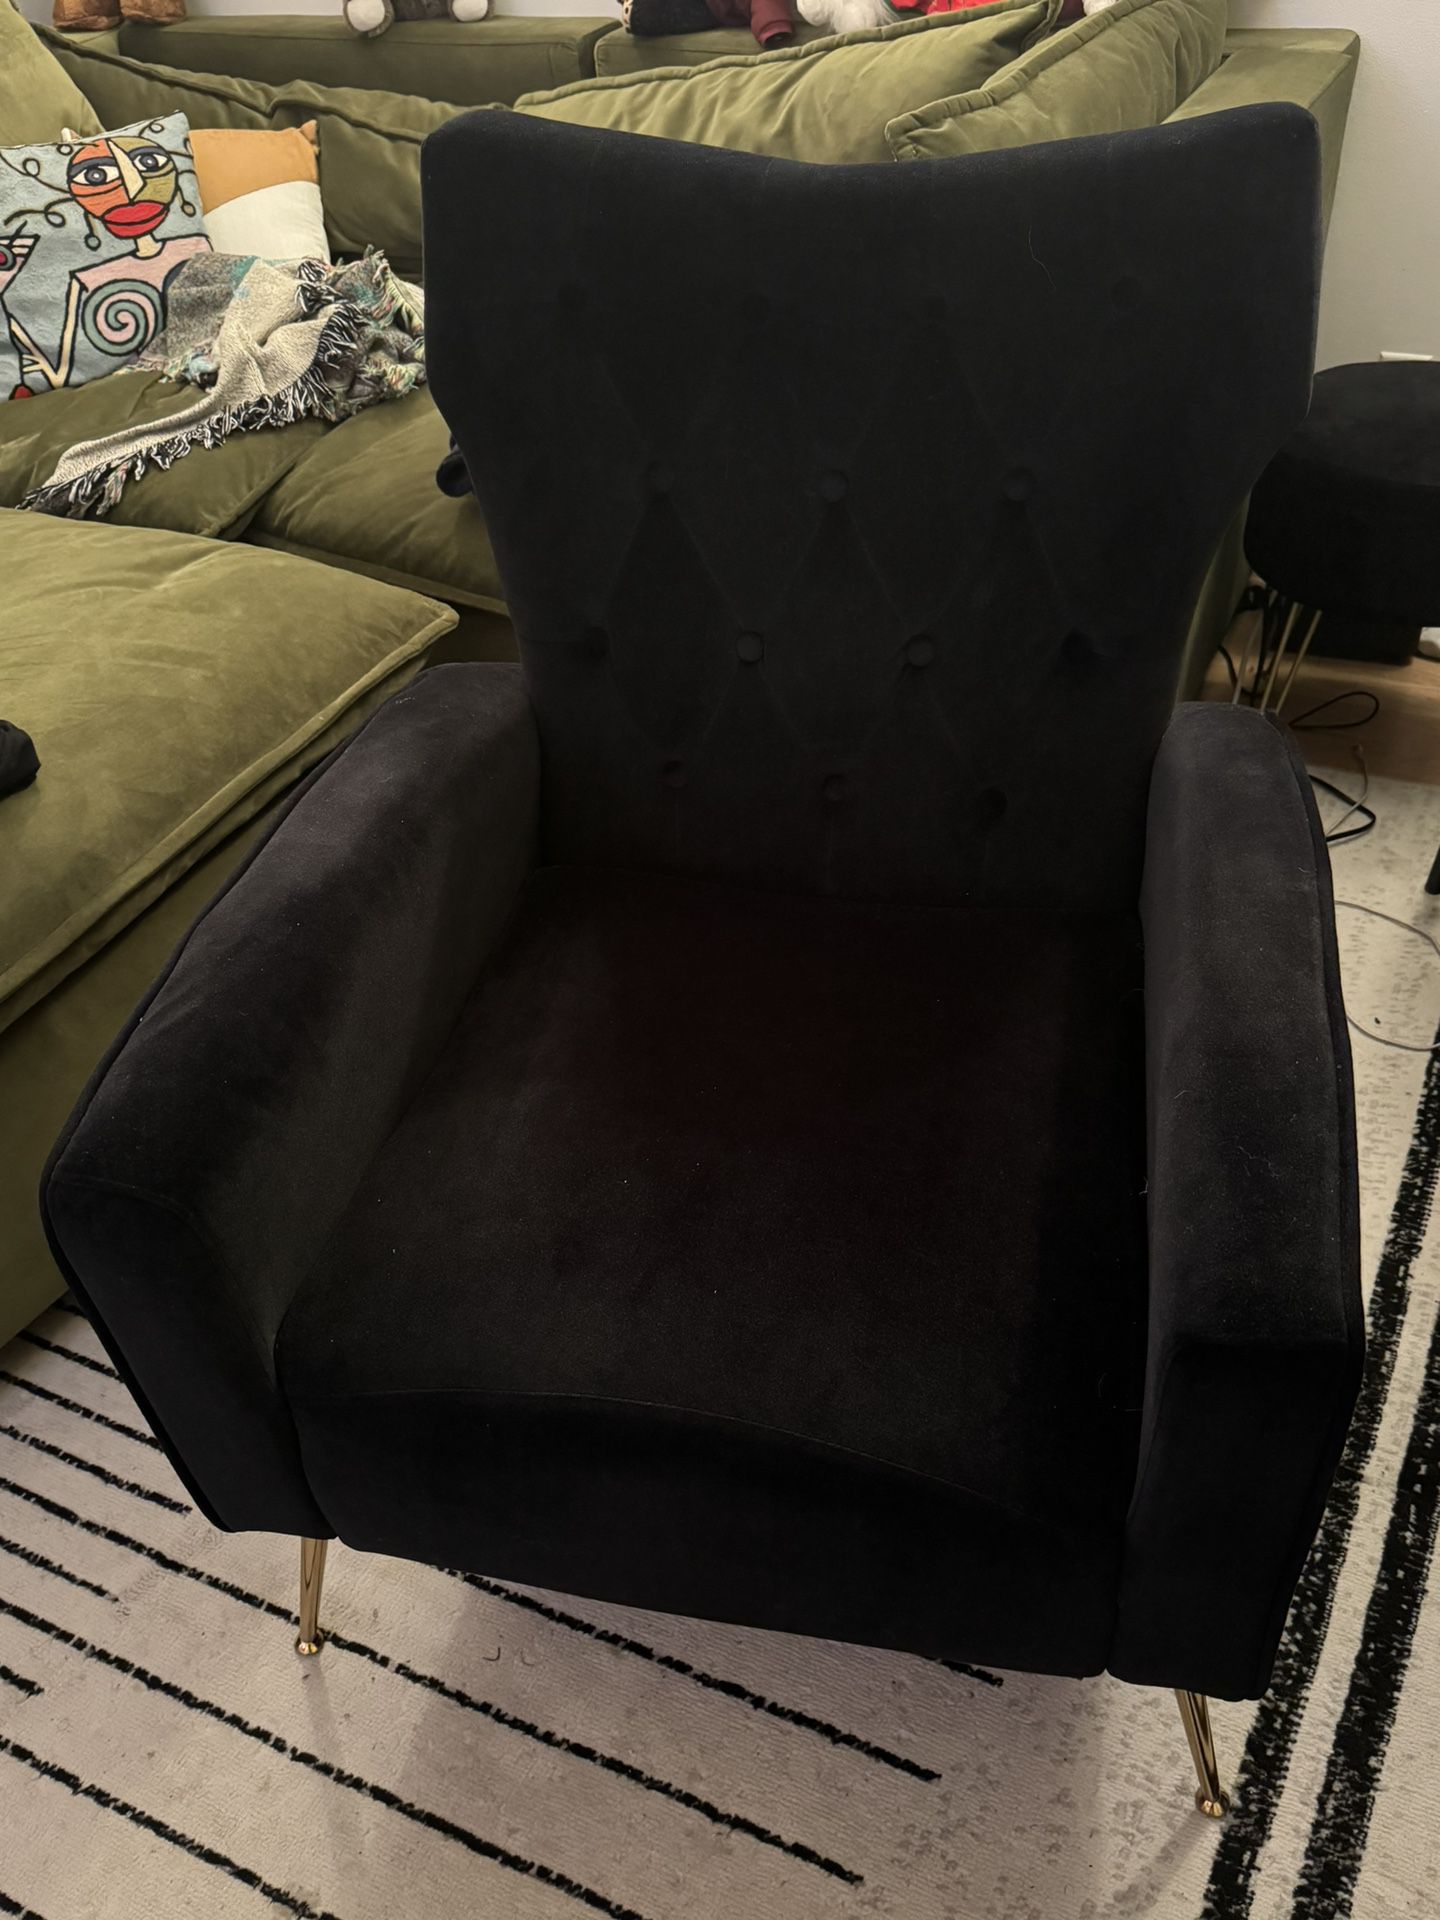 Black Velvet Wingback Chair